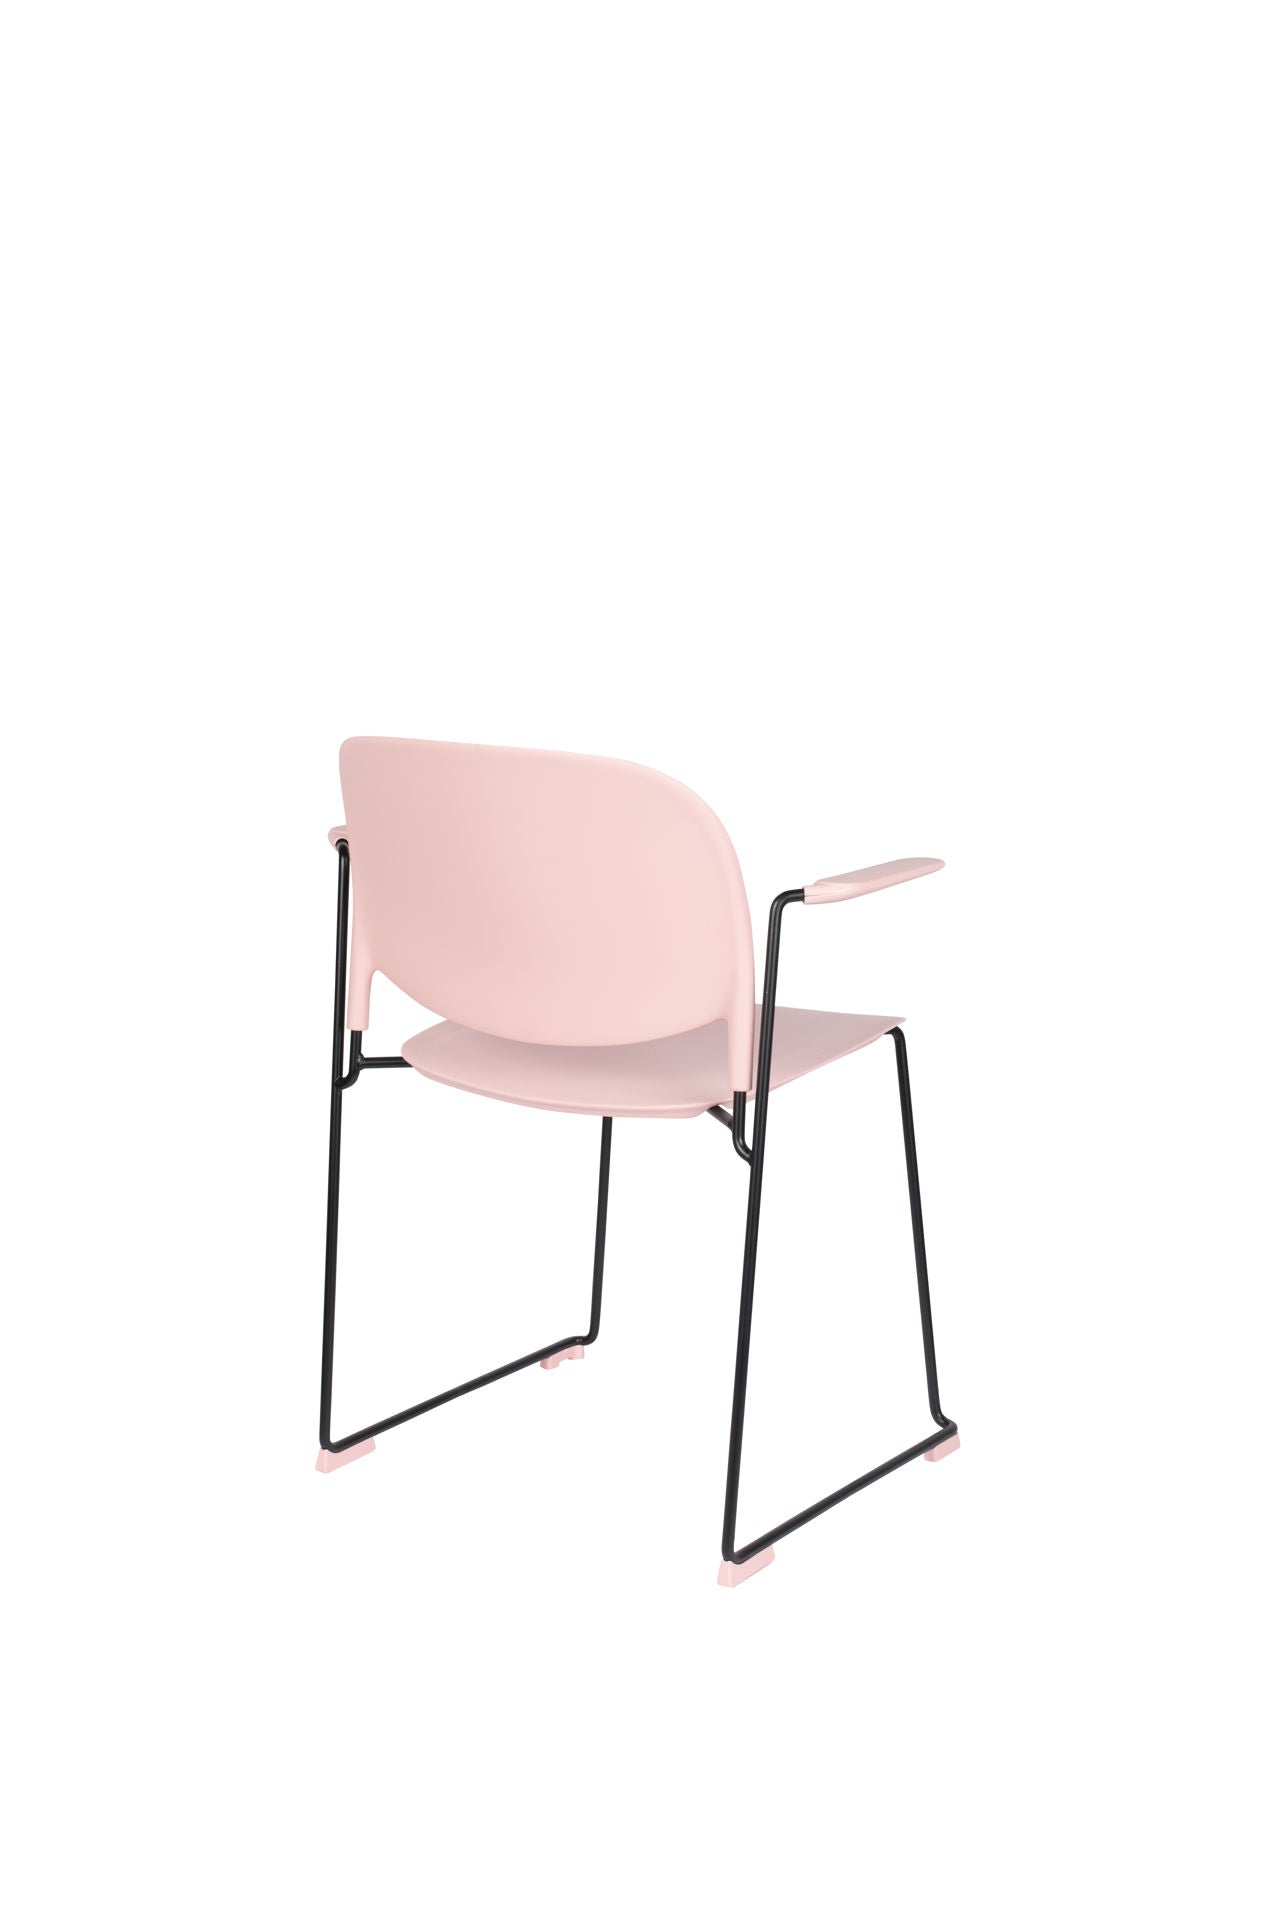 Nancy's Terrace Heights Chair - Retro - Roze, Zwart - Polypropyleen, Staal, Kunststof - 53 cm x 63,5 cm x 80,5 cm